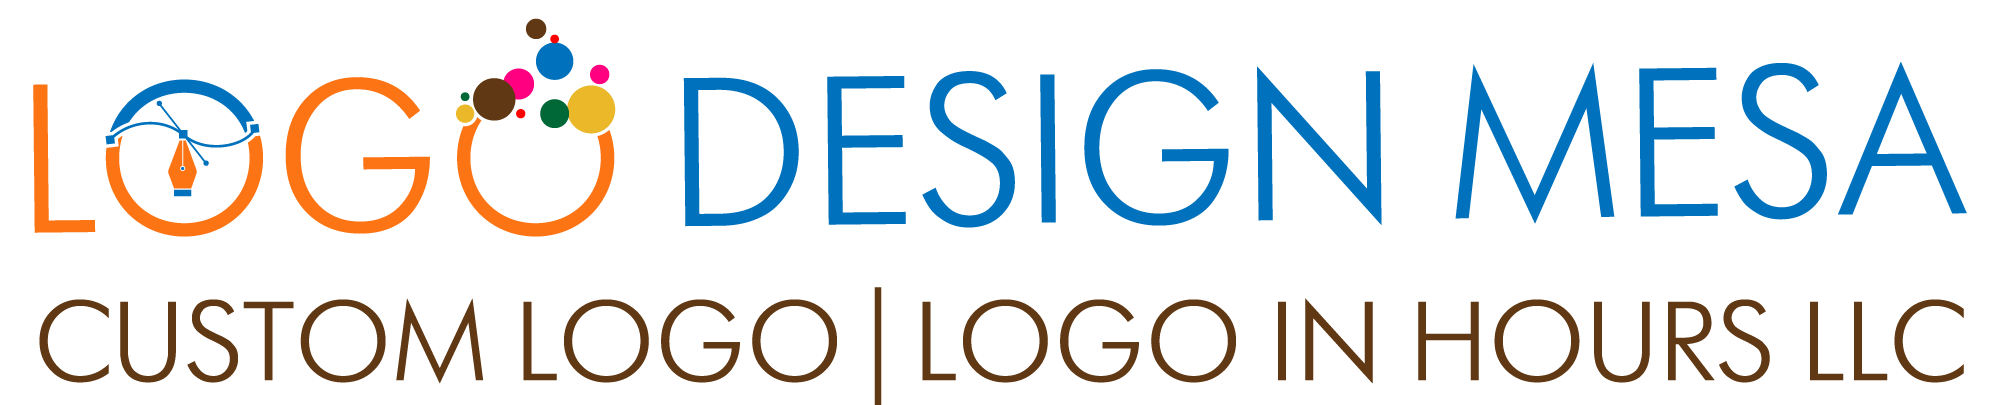 Logo Designer Mesa